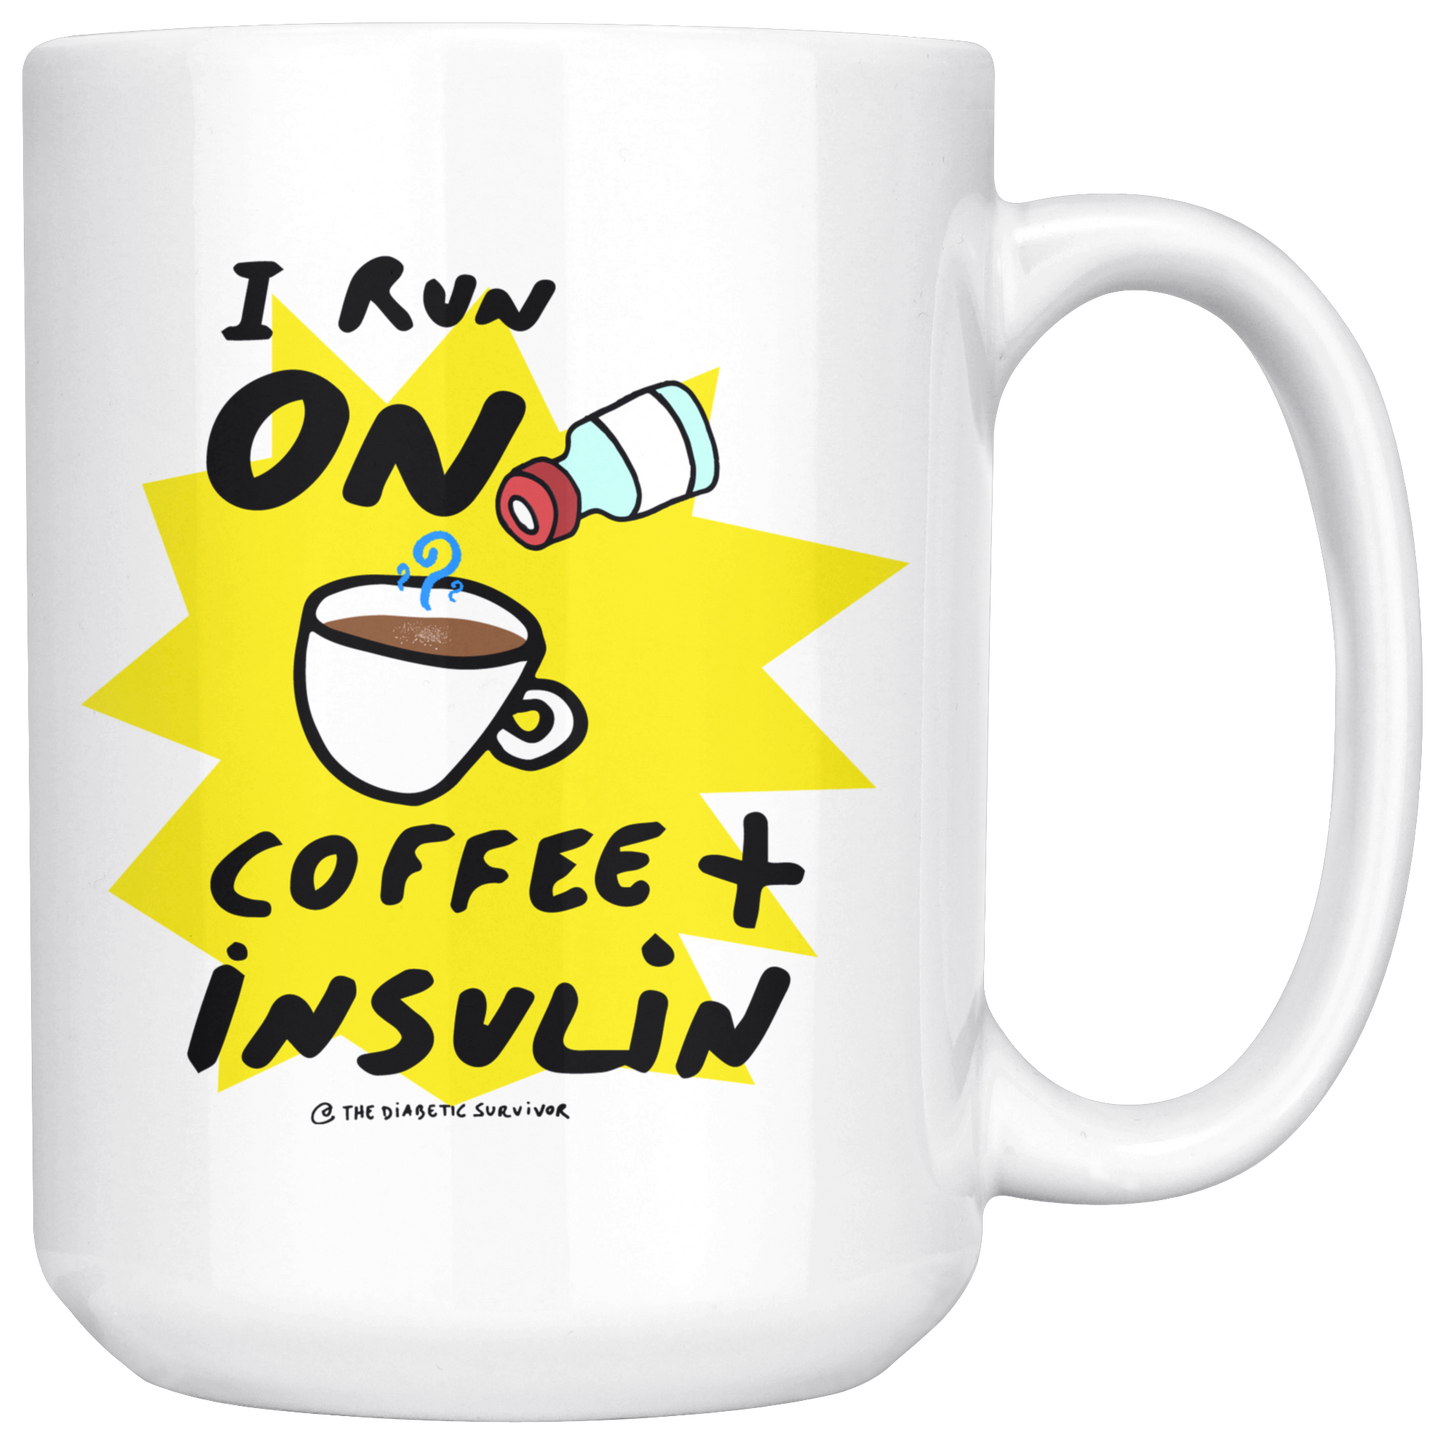 I run on COFFEE + INSULIN